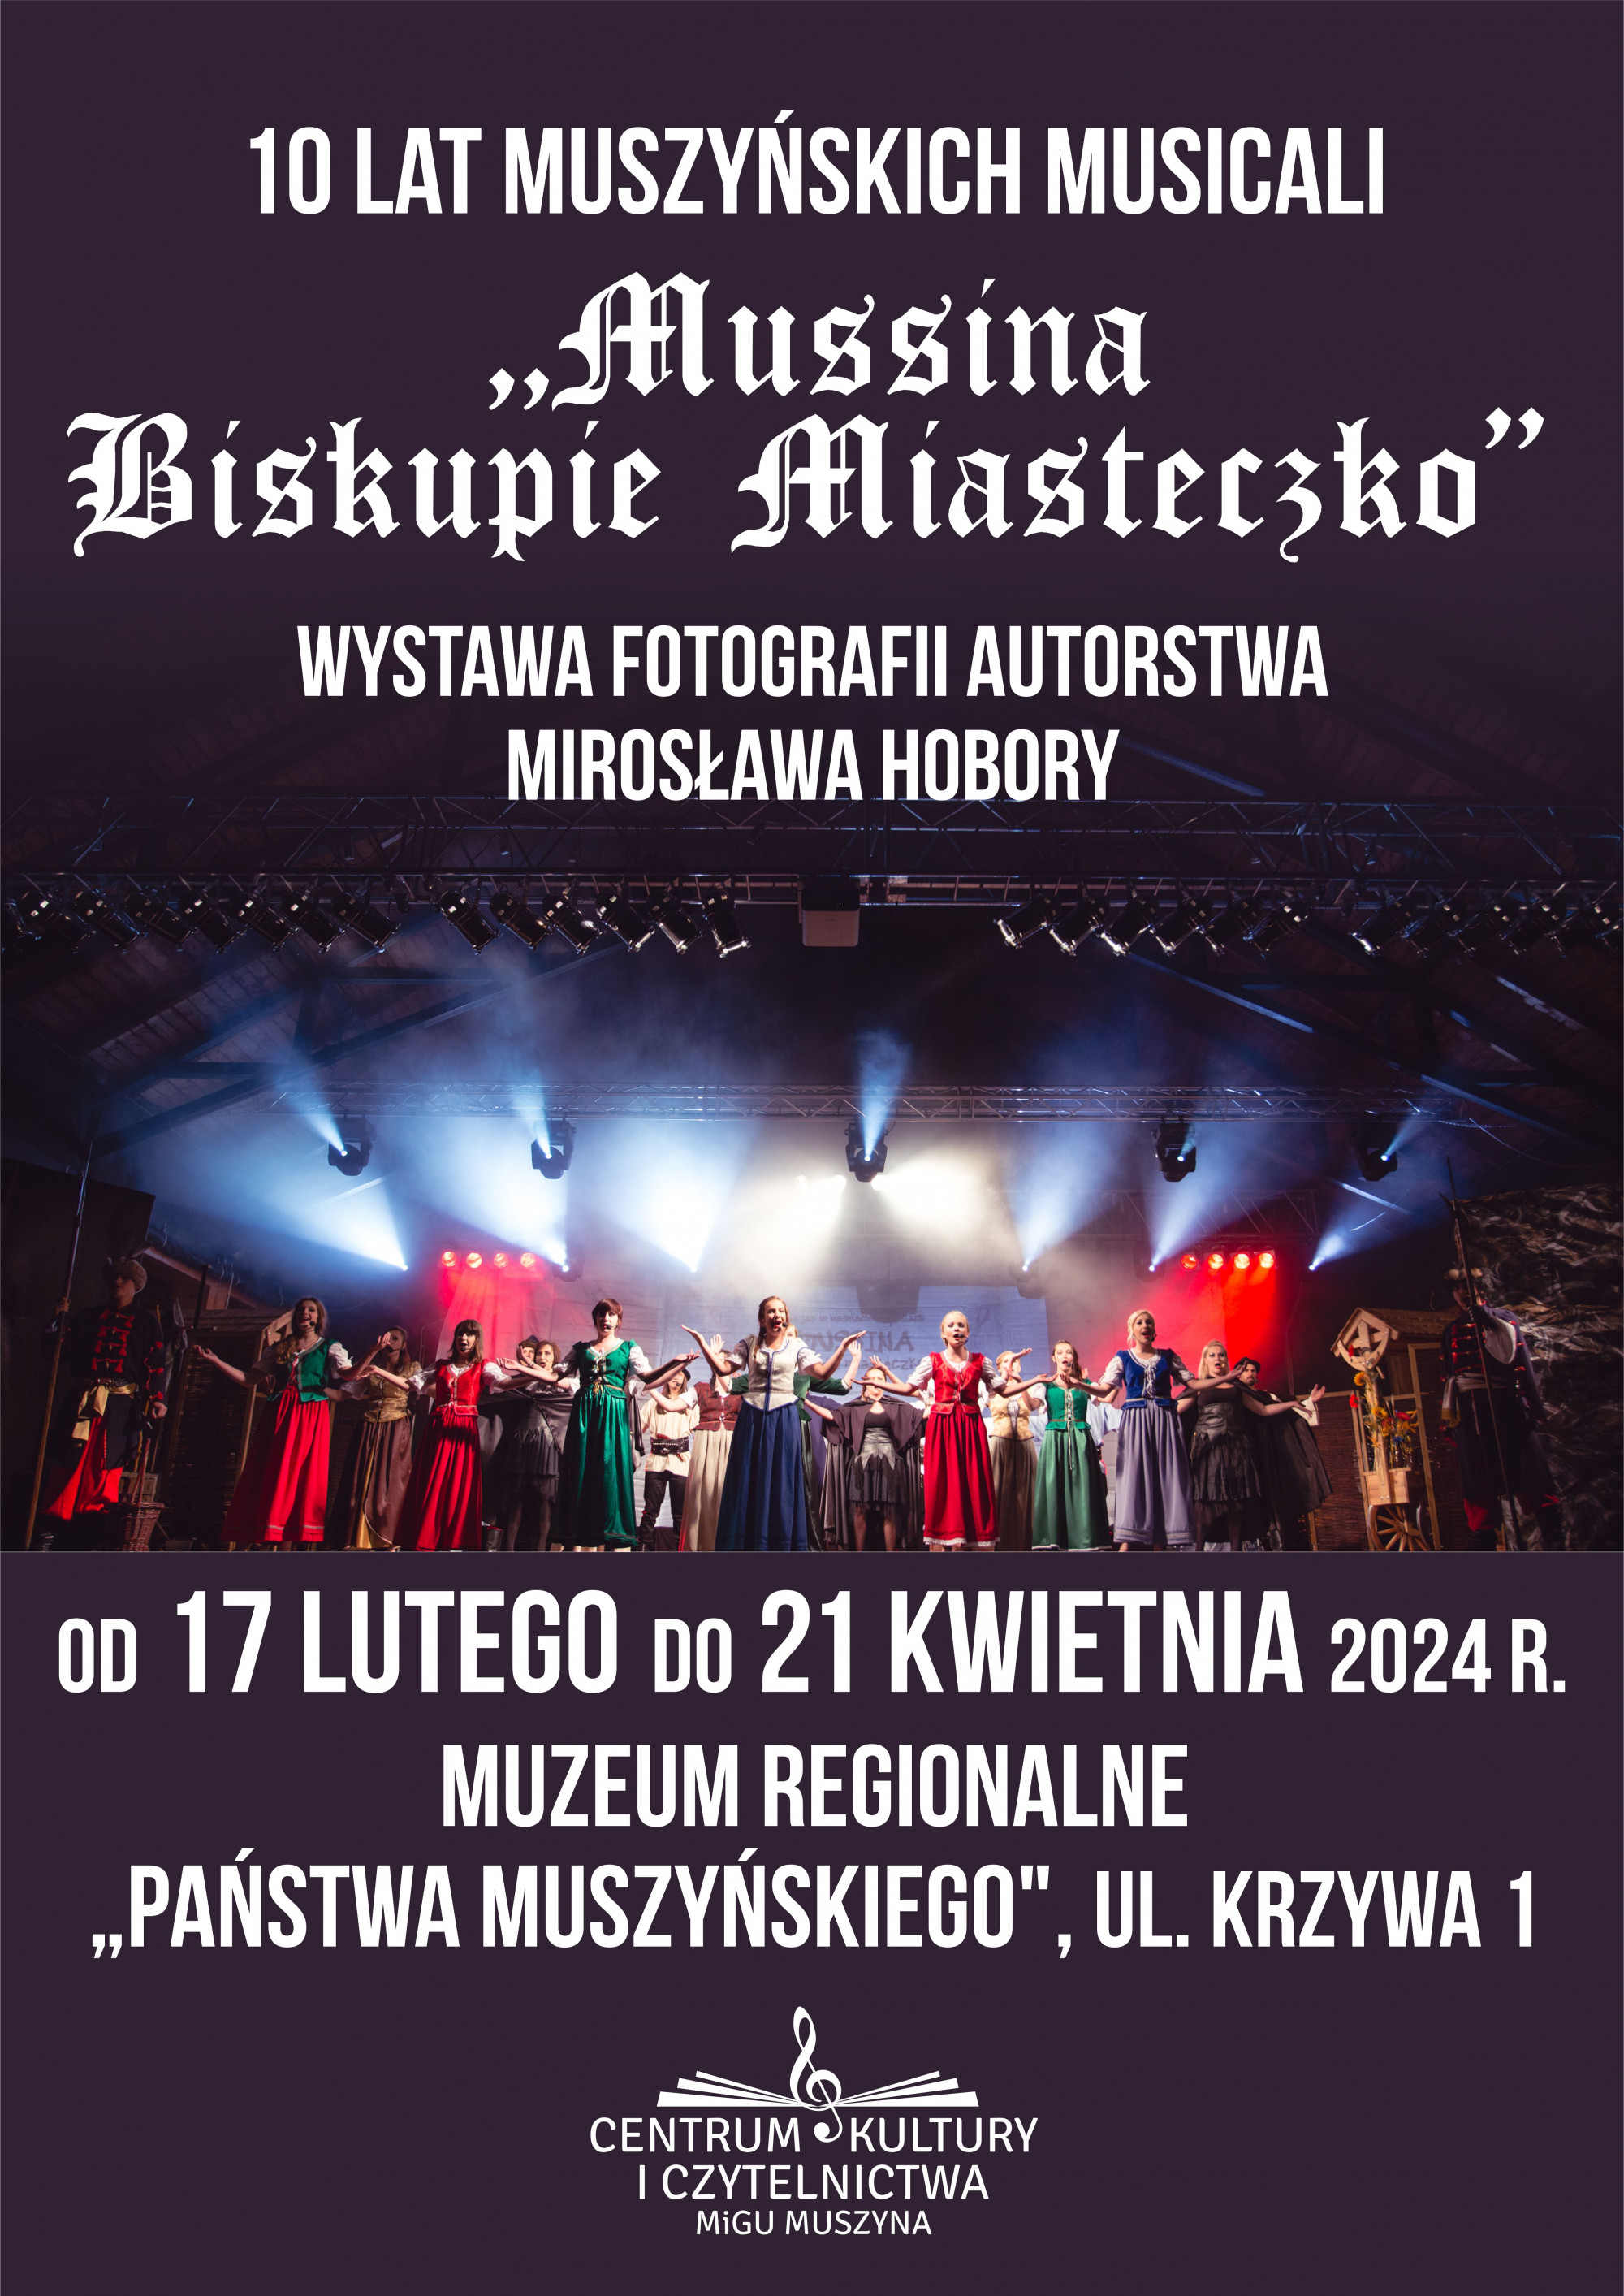 Mussina Biskupie Miasteczko - wystawa fotograficzna Mirosława Hobory